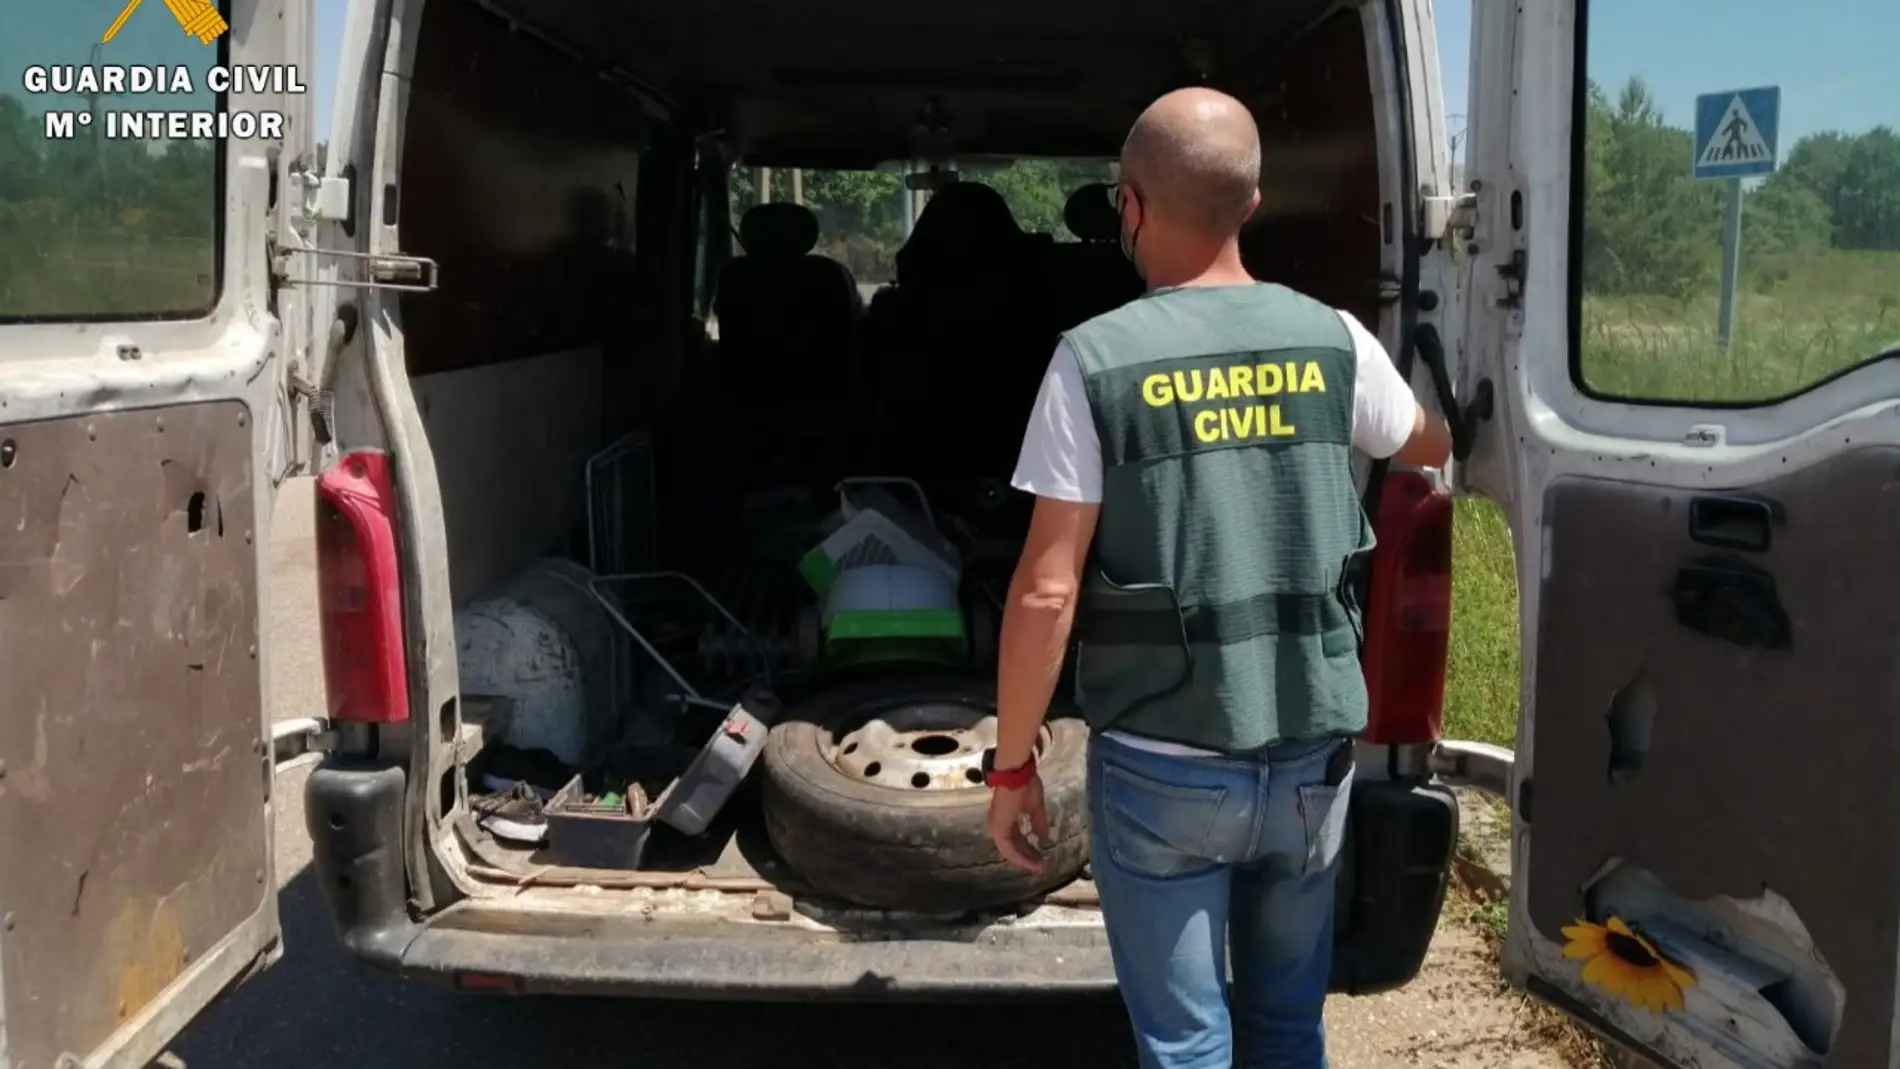 La Guardia Civil detiene a dos personas e investiga a otra por un supuesto delito de robo en el punto limpio de la localidad de Guardo